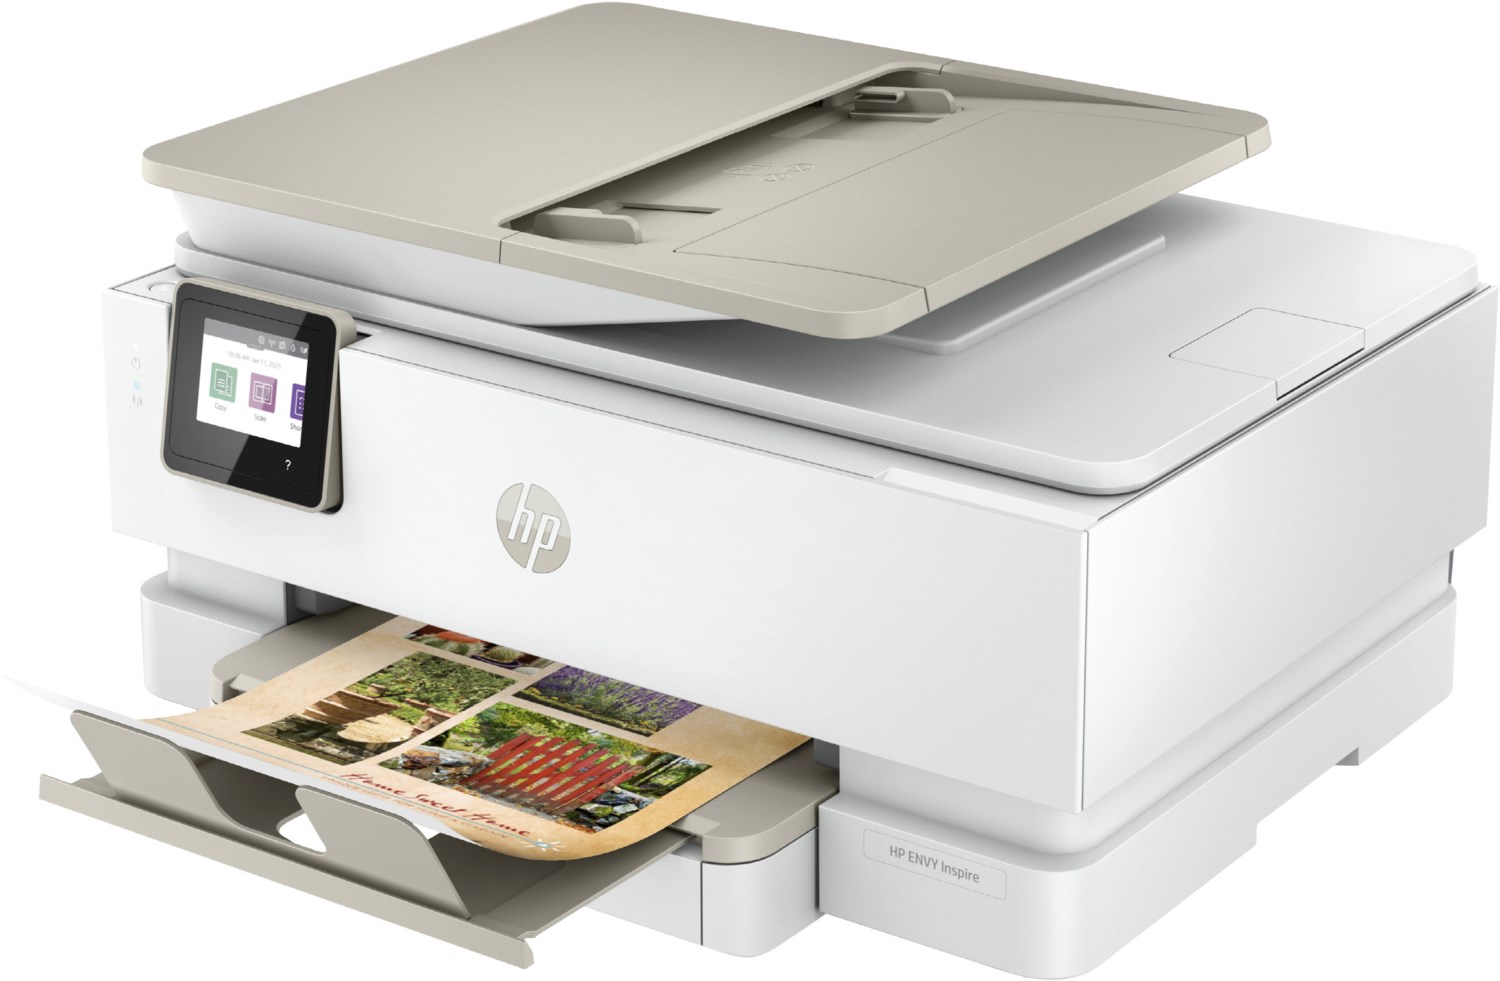 HP Envy Inspire 7920e Multifunktionsgerät Tinte weiß